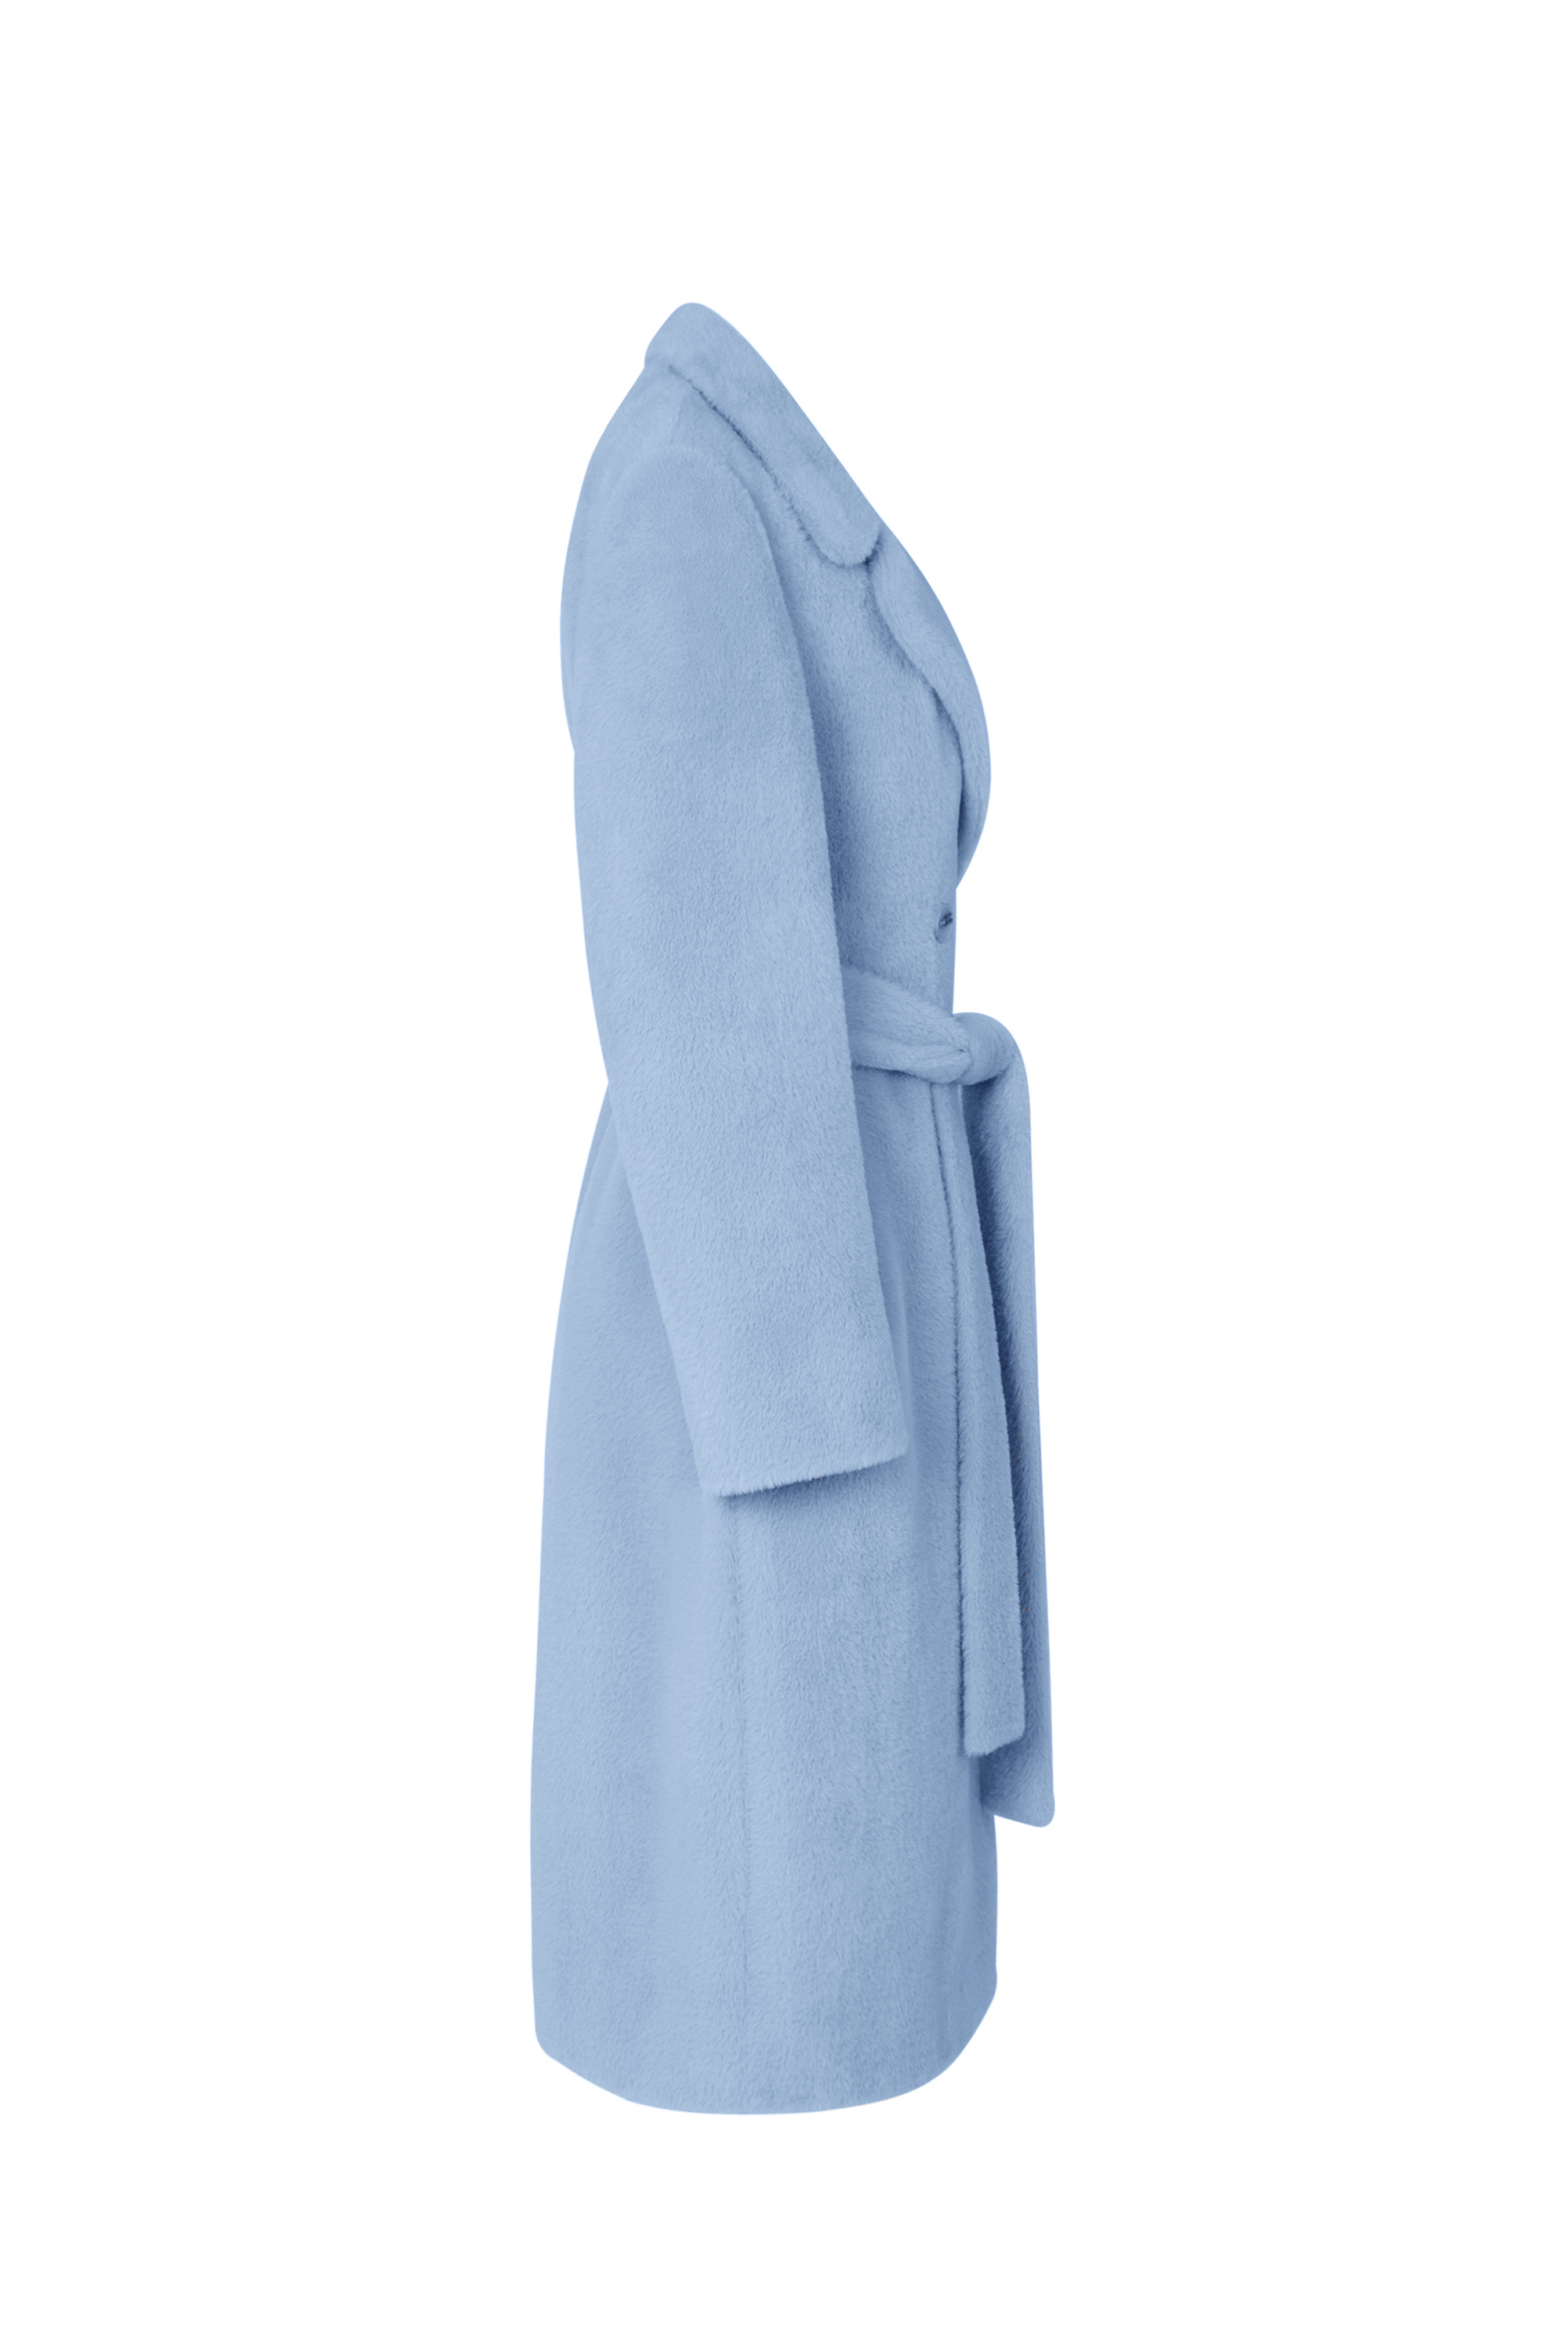 Пальто женское демисезонное 1-13053-1. Фото 2.